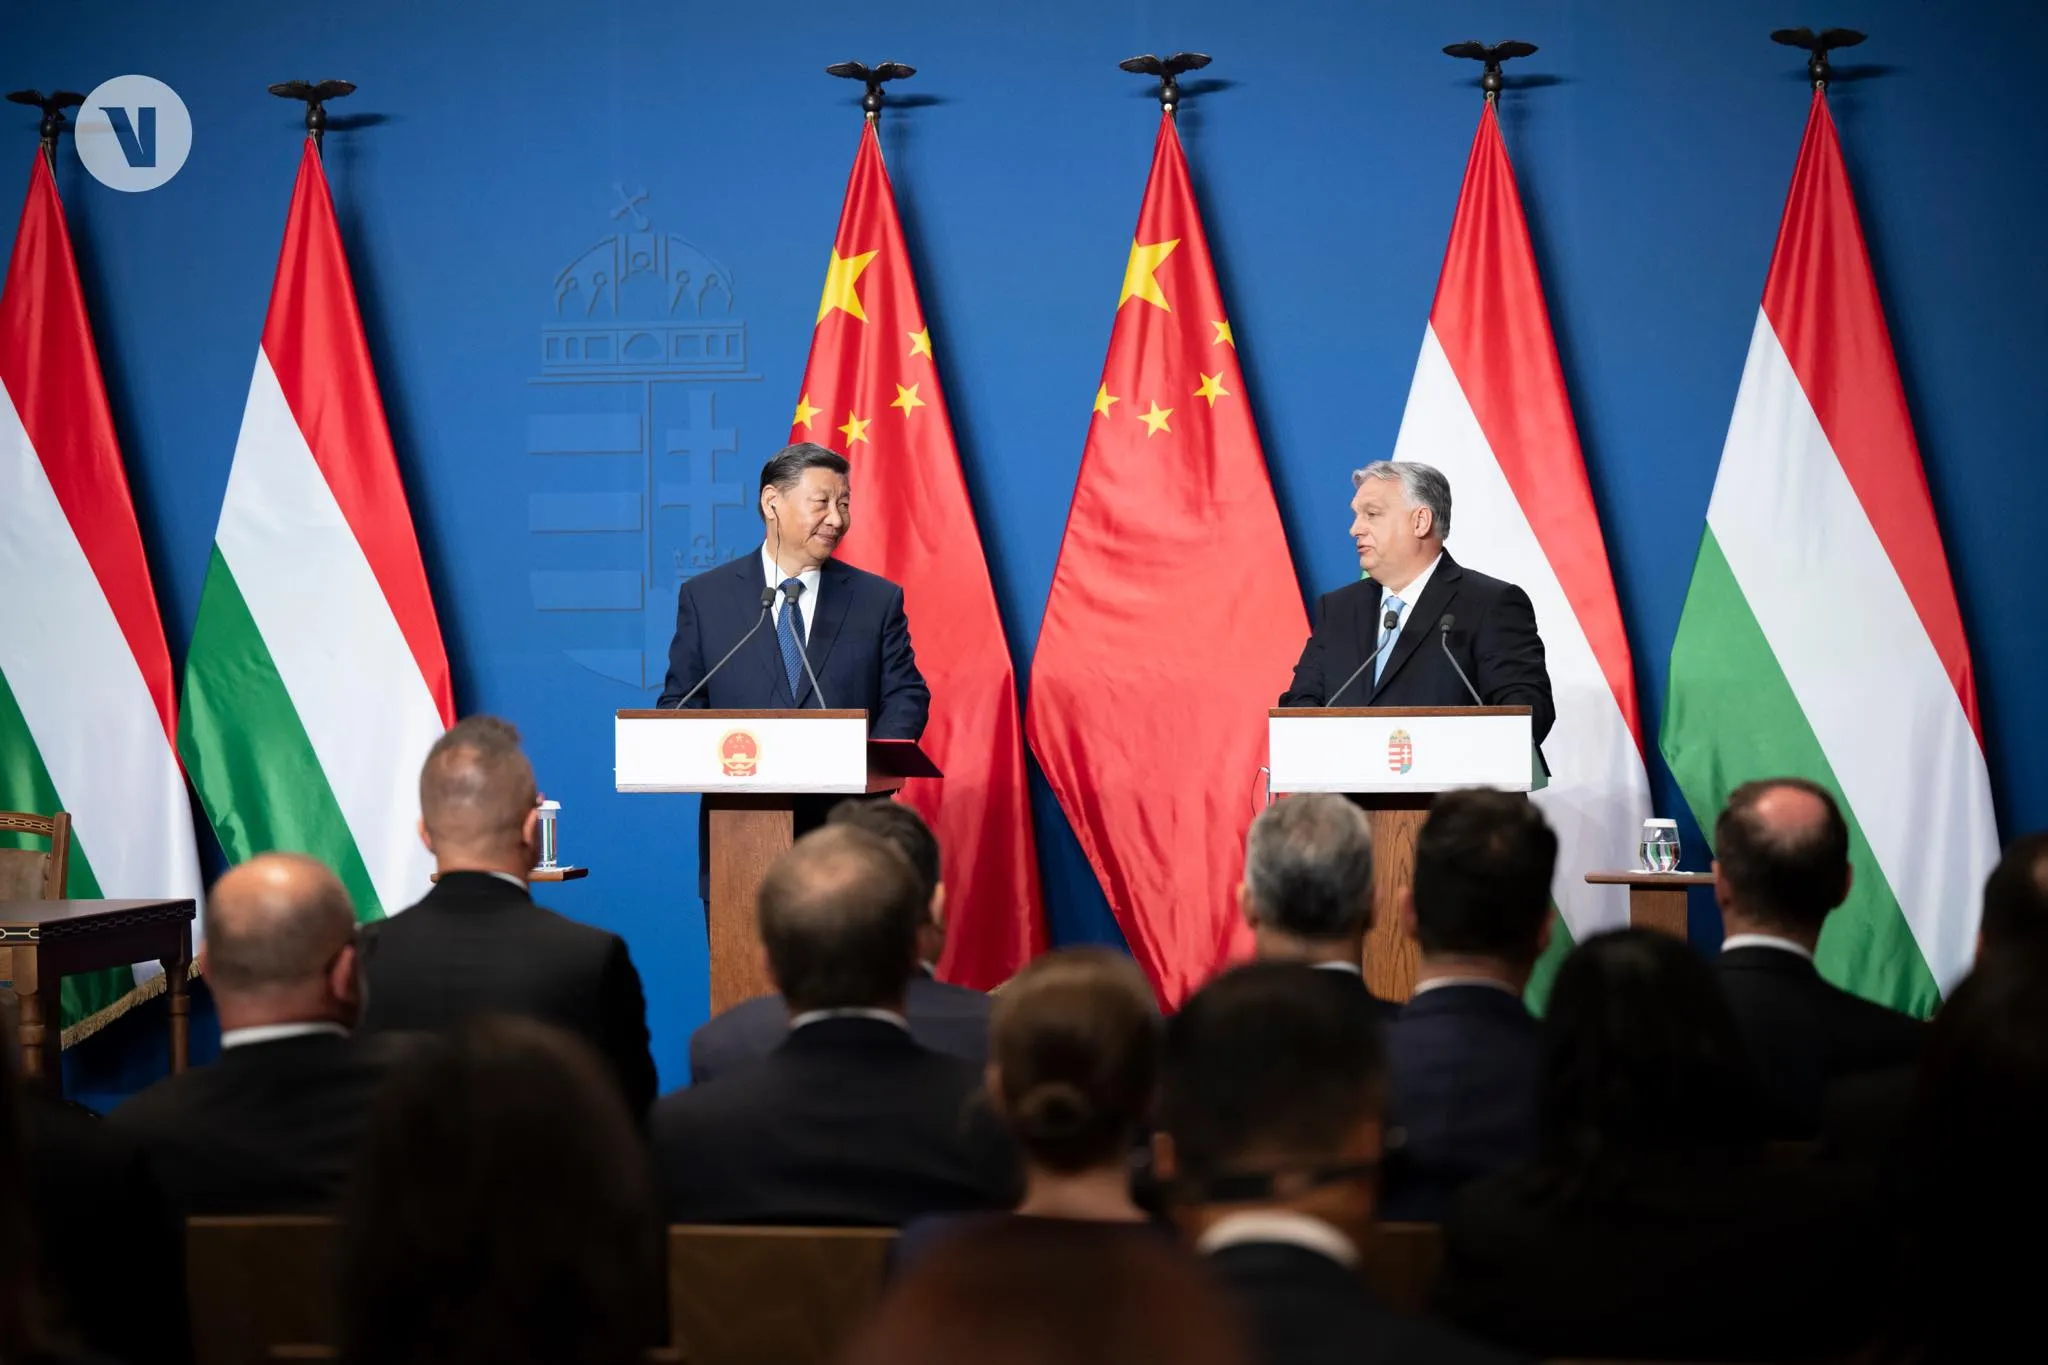 Венгрию включили в круг друзей Китая после визита Си Цзиньпина к Орбану